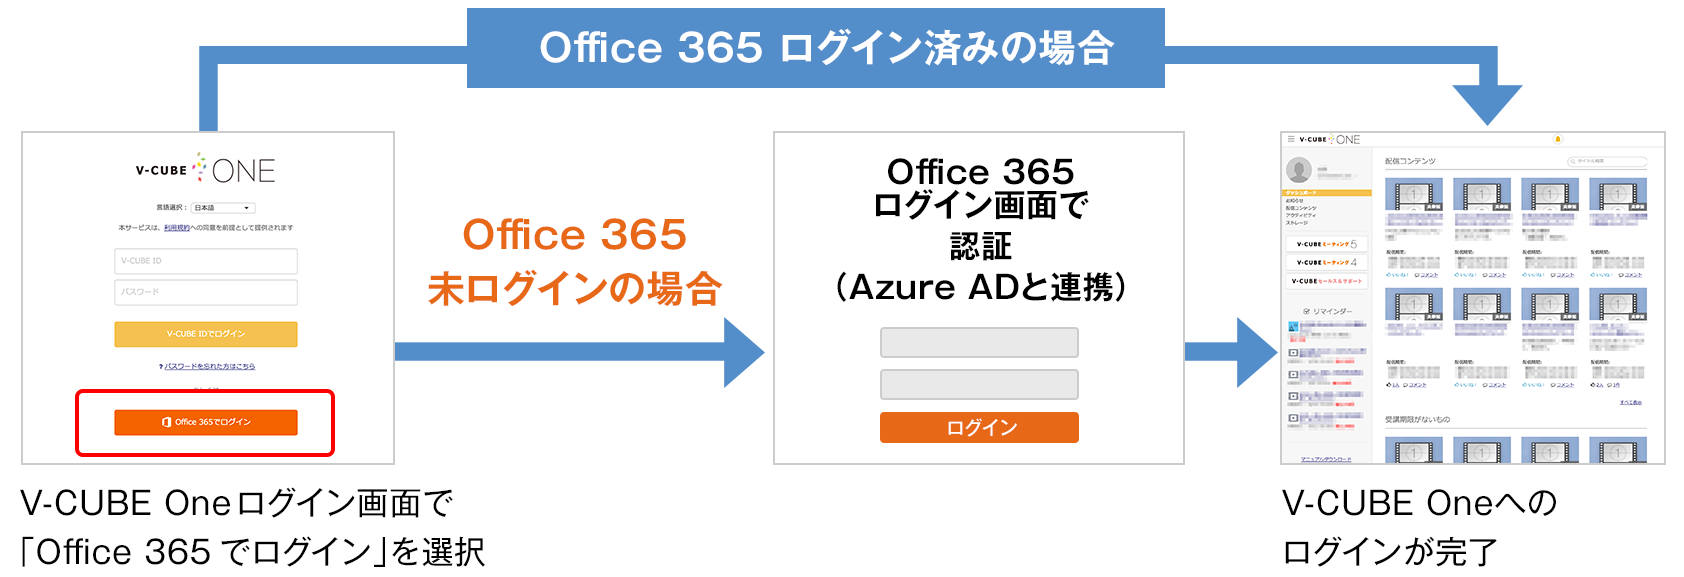 Office 365 連携によるシングルサインオン